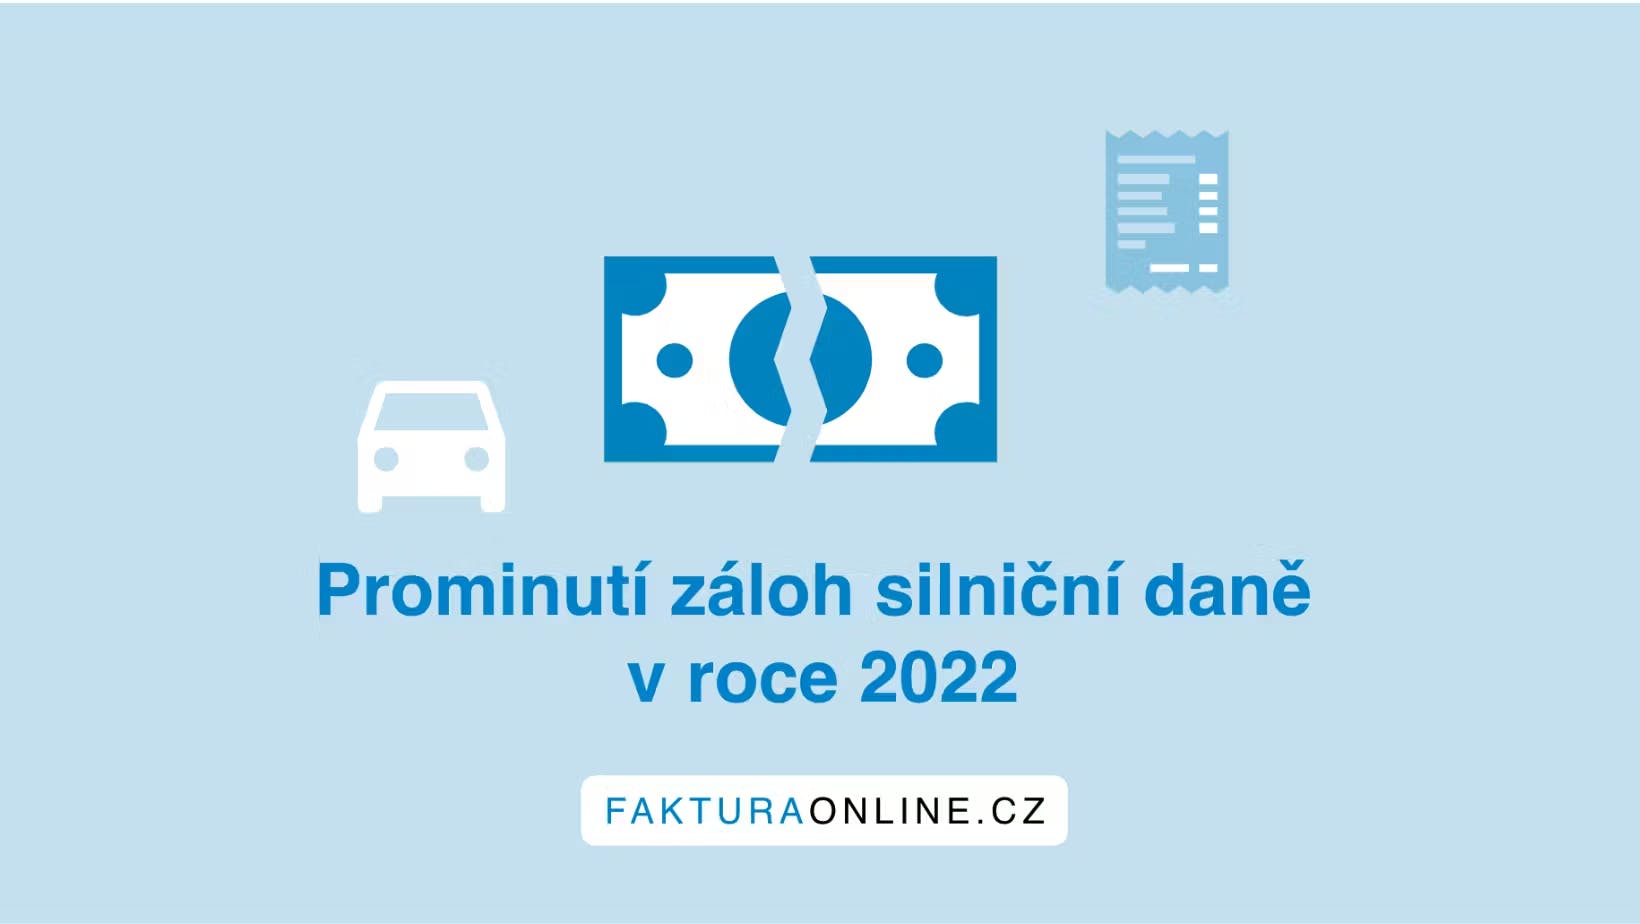 Prominutí záloh na daň silniční za rok 2022